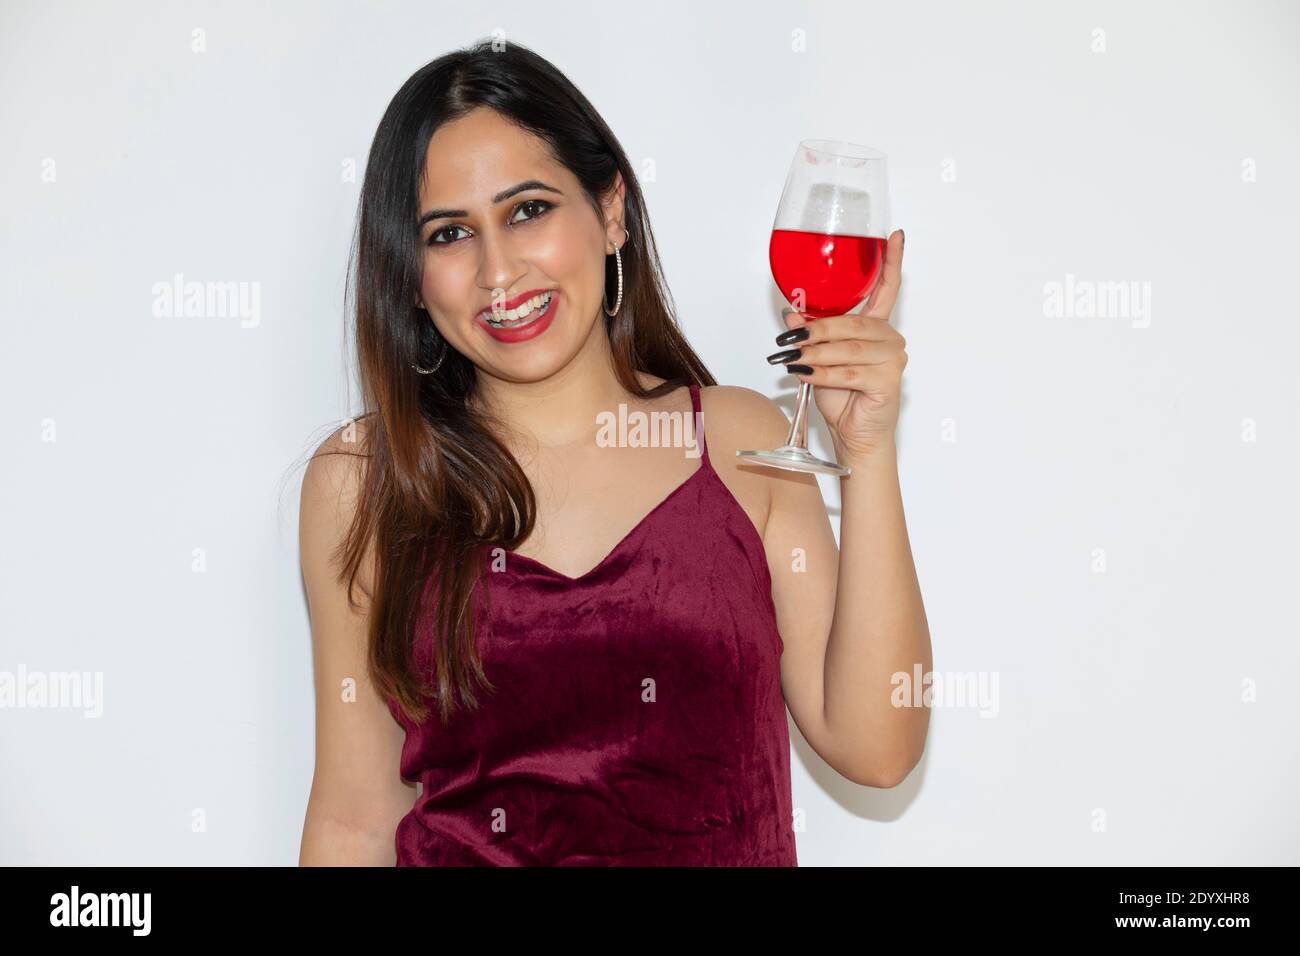 Junge Frau mit Weinglas zur Feier der Neujahrsfeier Stockfoto